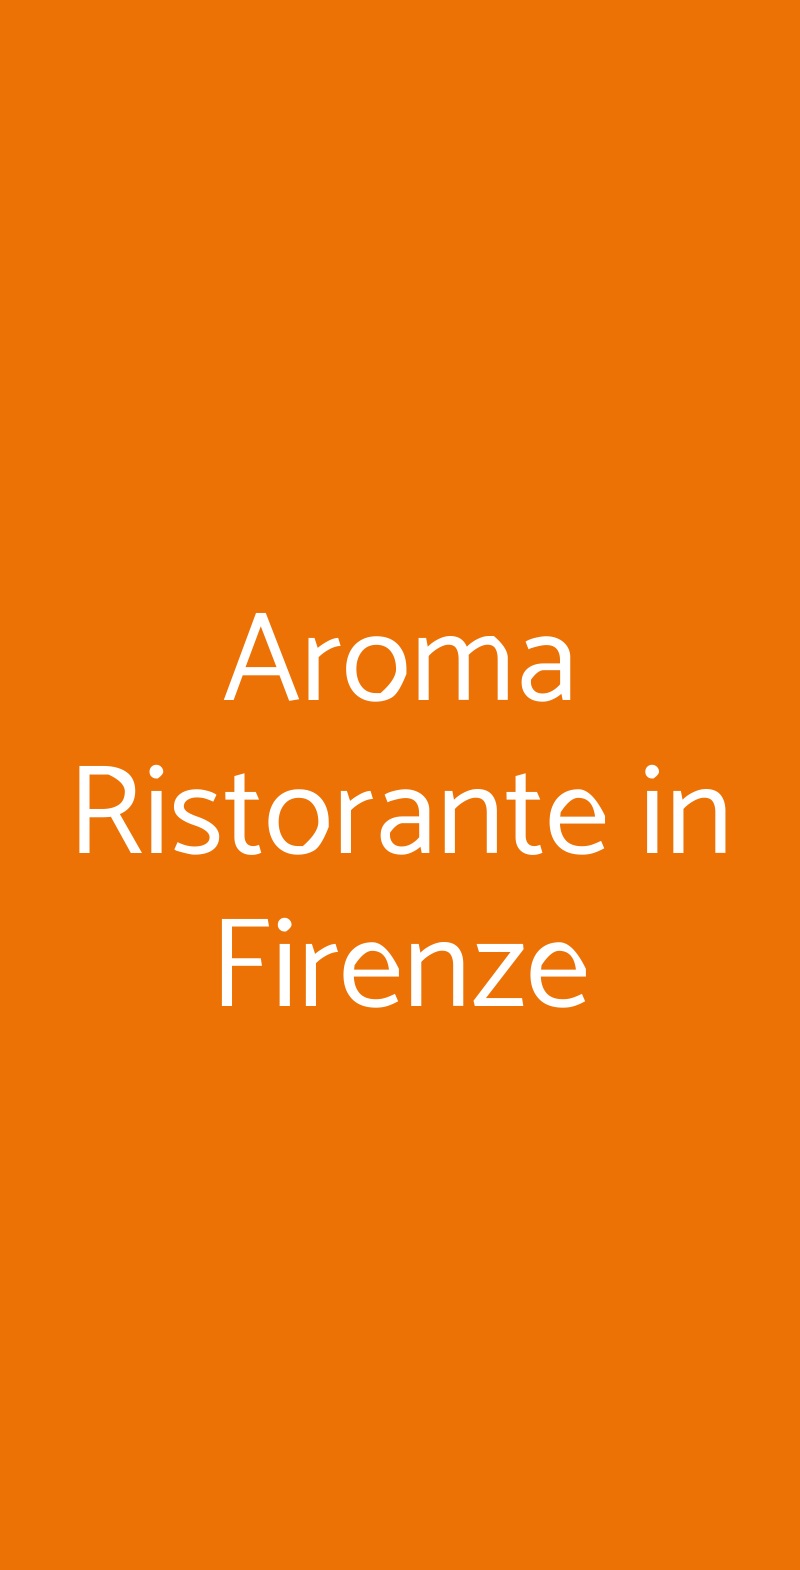 Aroma Ristorante in Firenze Firenze menù 1 pagina